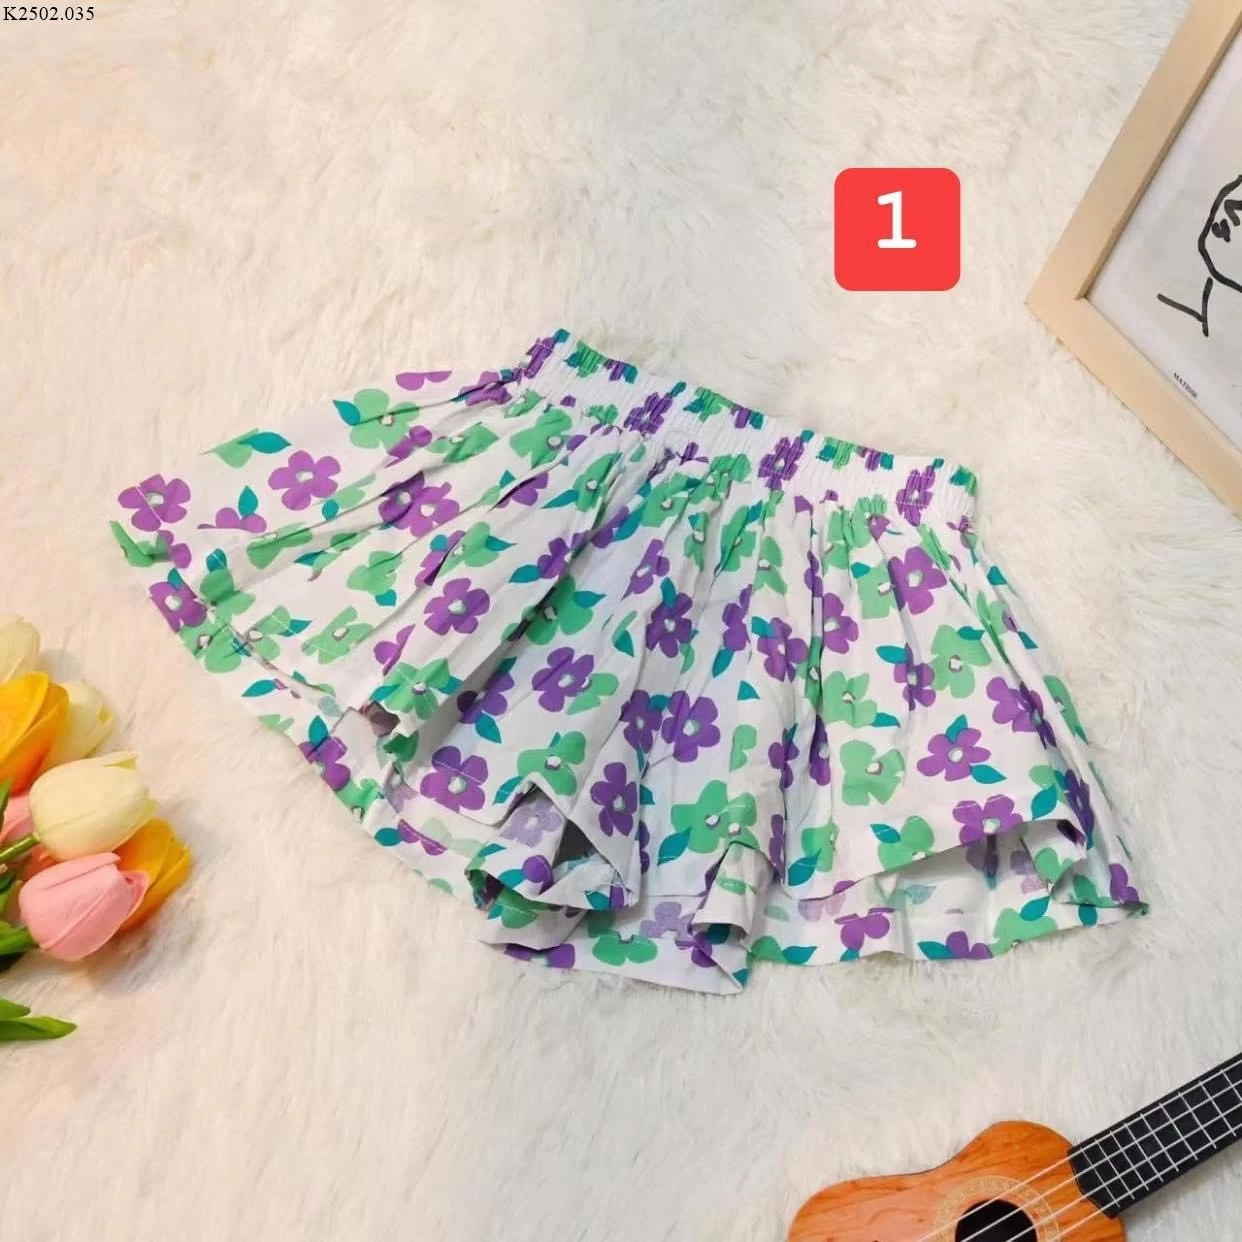 𝑭𝒓𝒆𝒆 𝒔𝒉𝒊𝒑) Quần đùi giả váy chất liệu cotton cực đẹp cho bé từ  11-29kg | Shopee Việt Nam